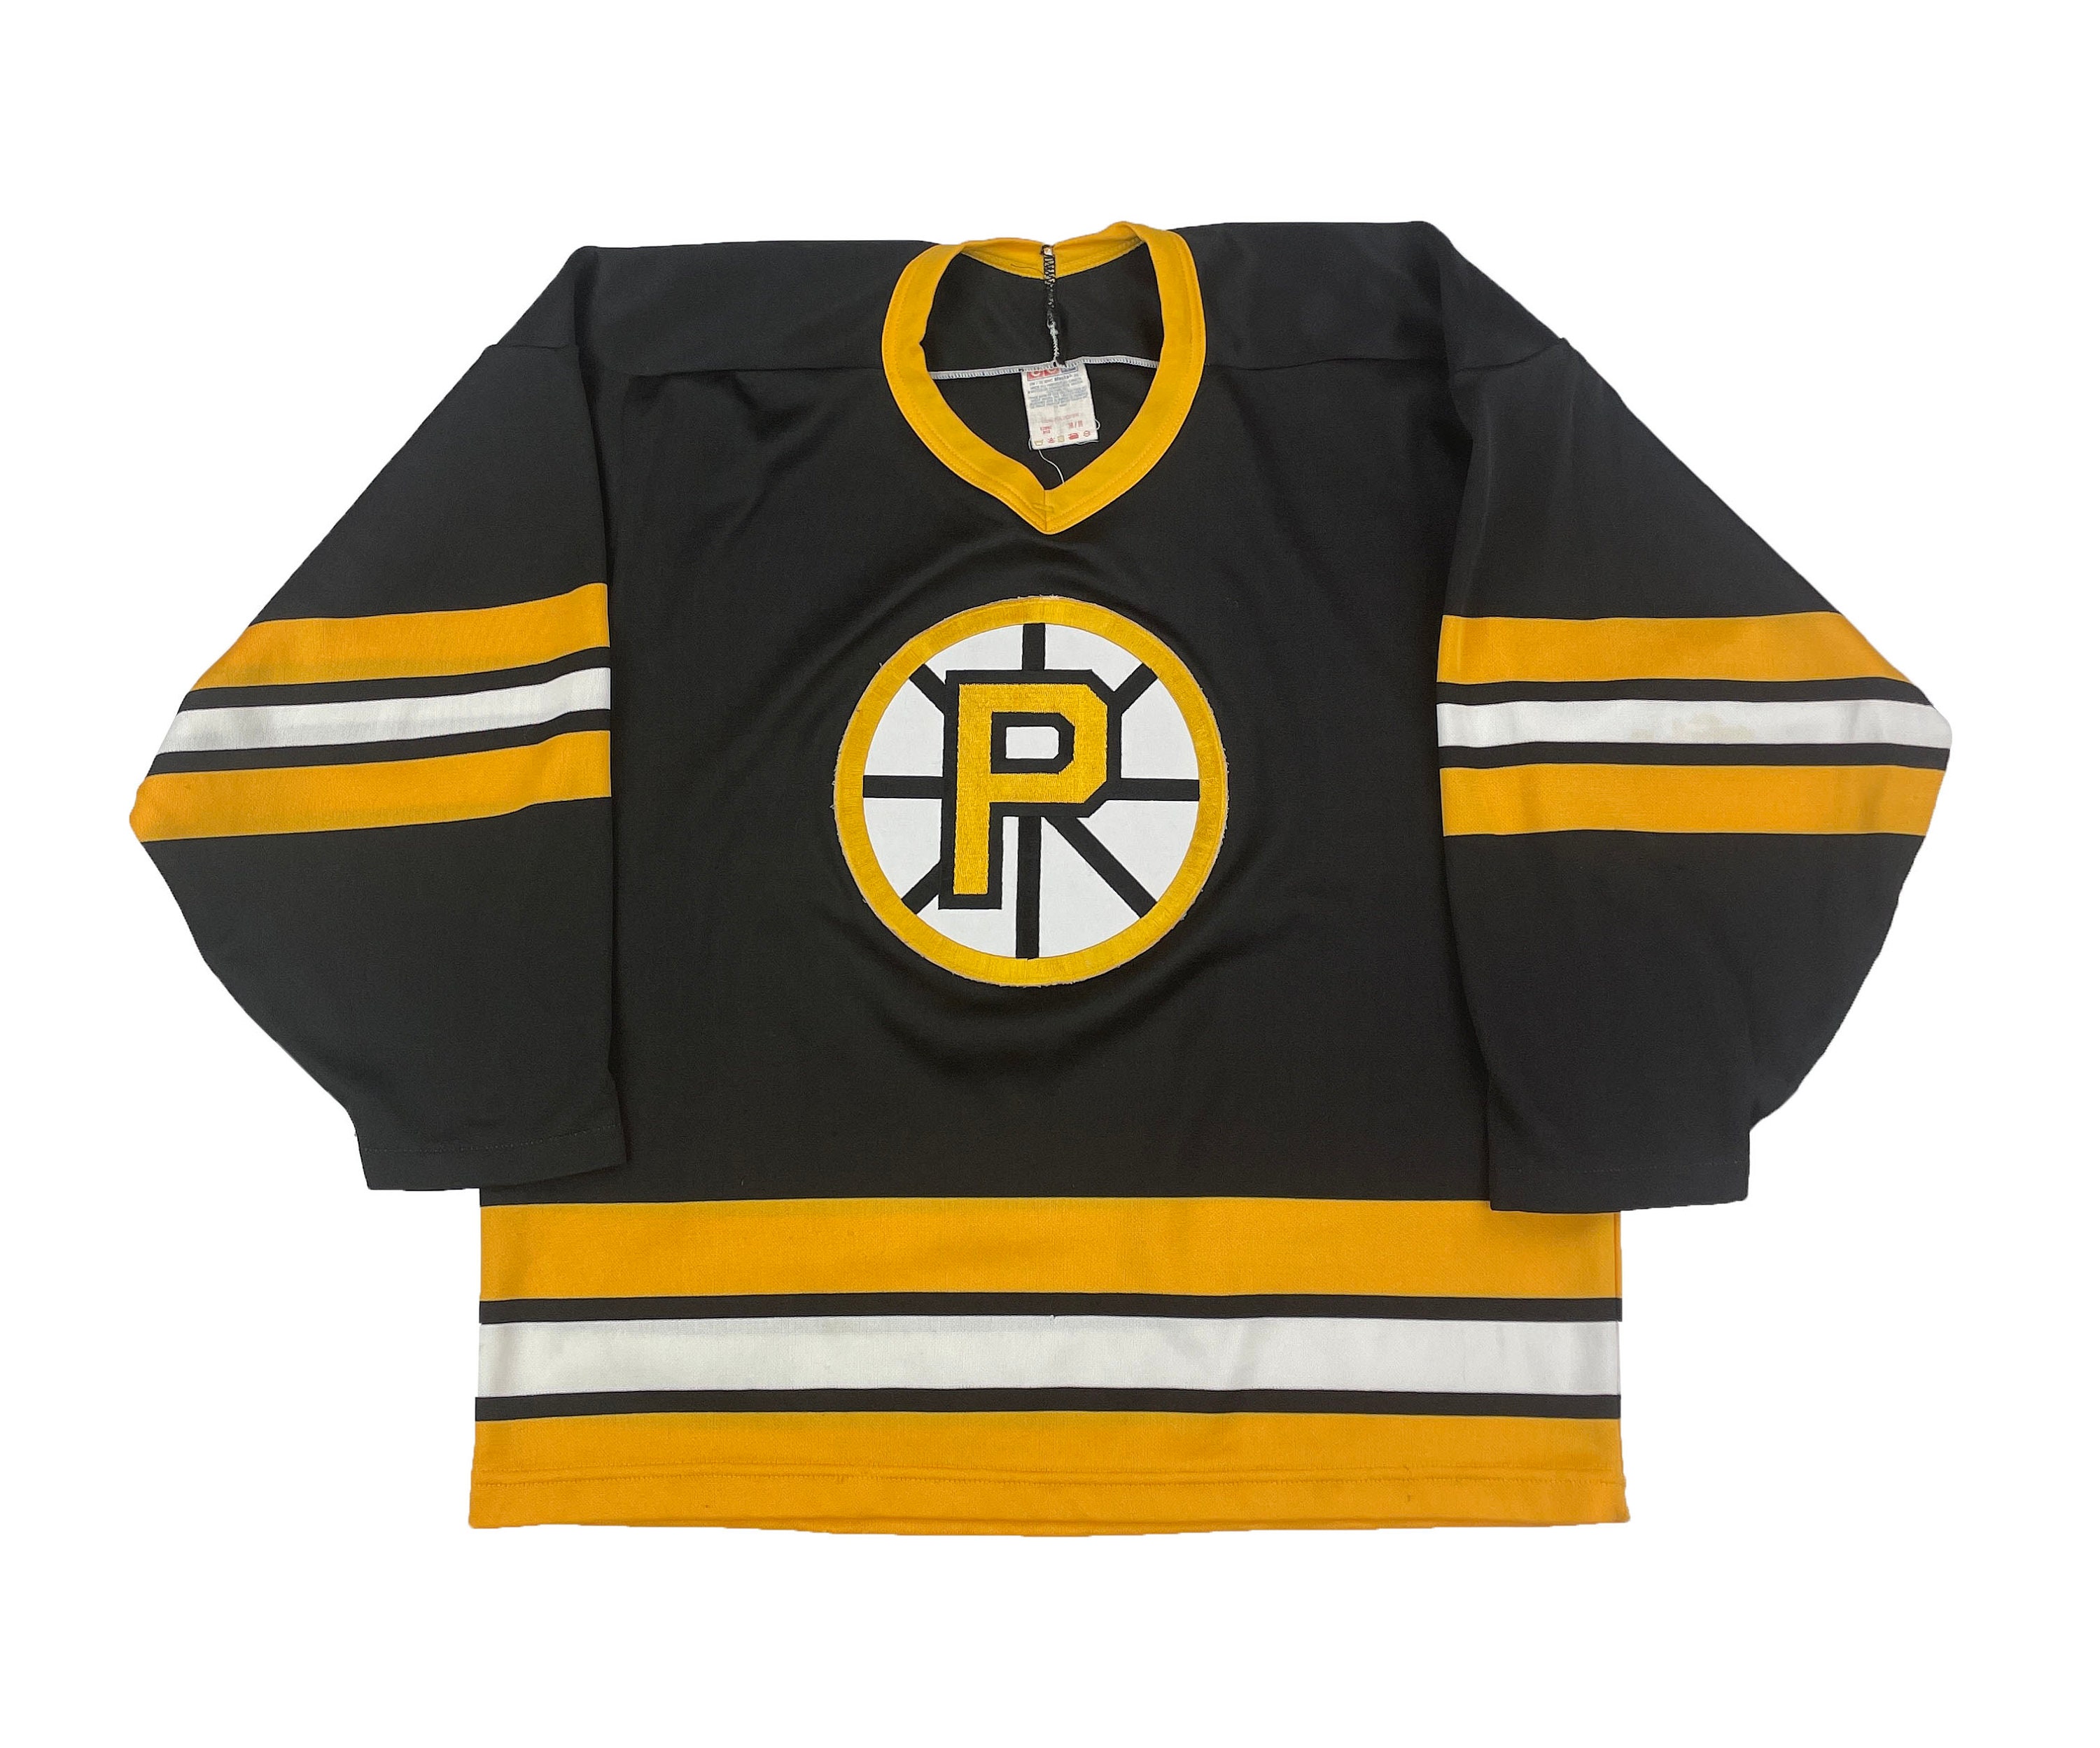 Providence Bruins Minor League Hockey Fan Jerseys for sale